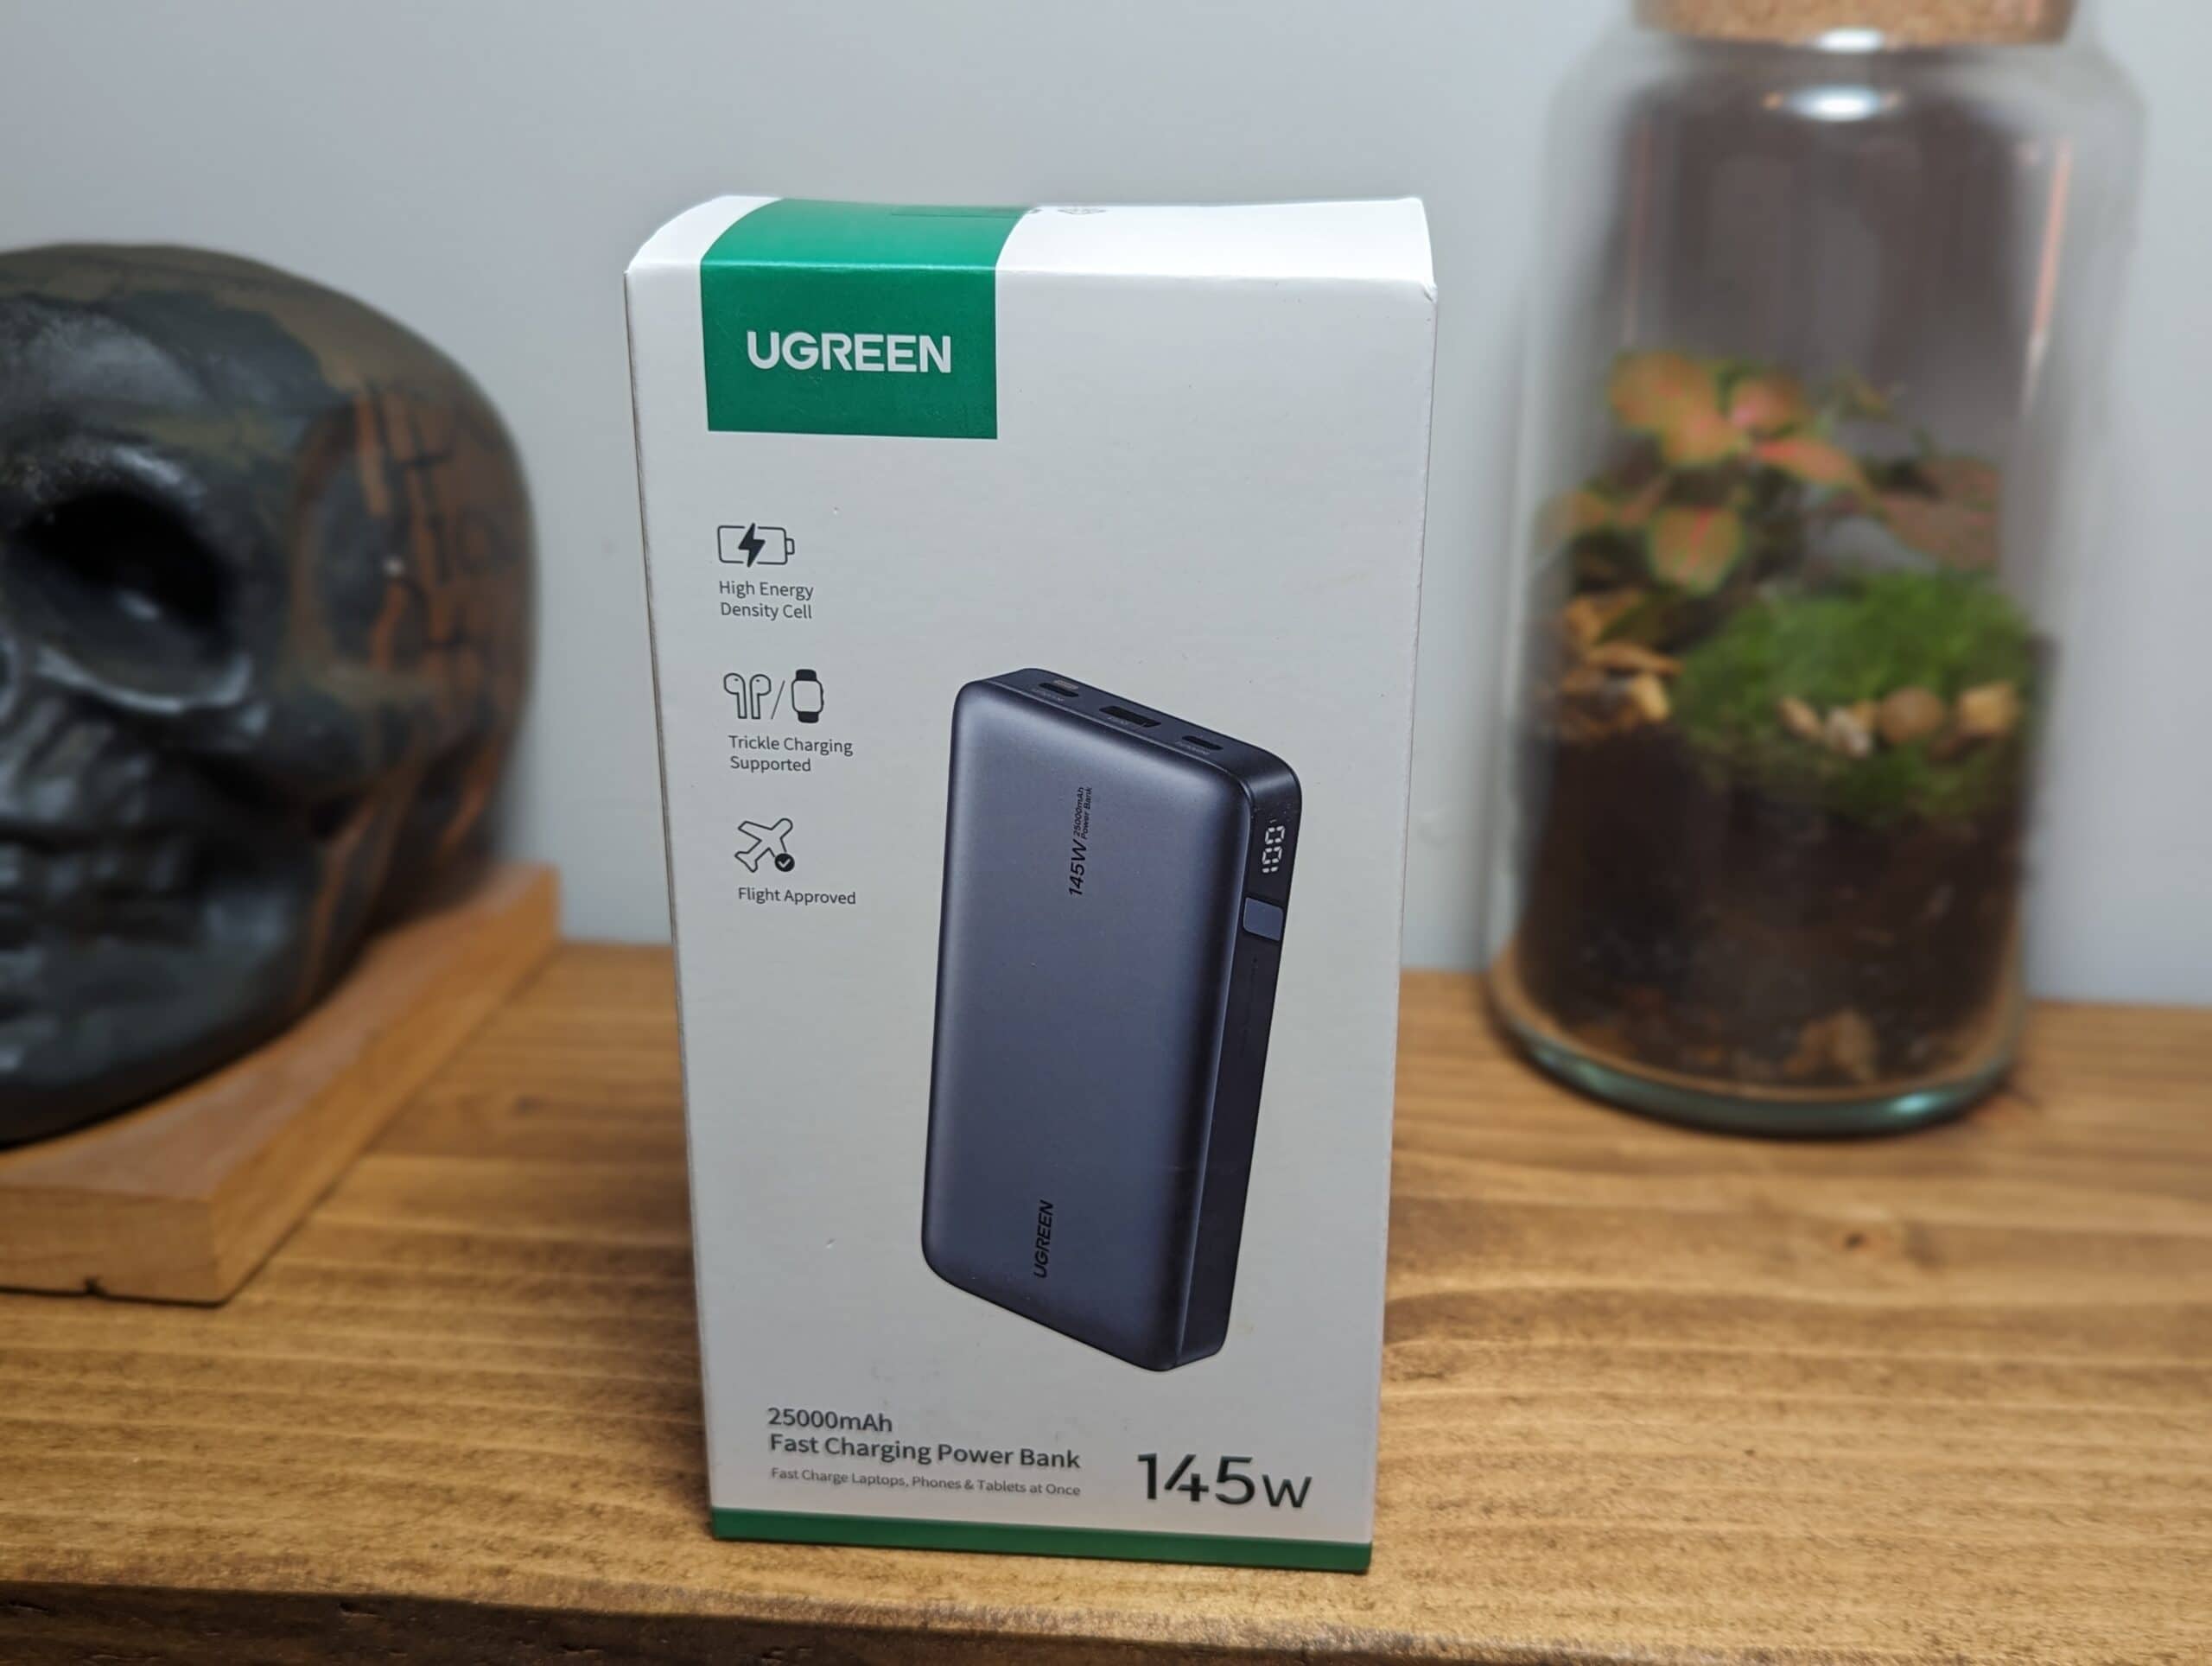 Ugreen release the Ugreen 145W  25000mAh Power Bank a lightweight